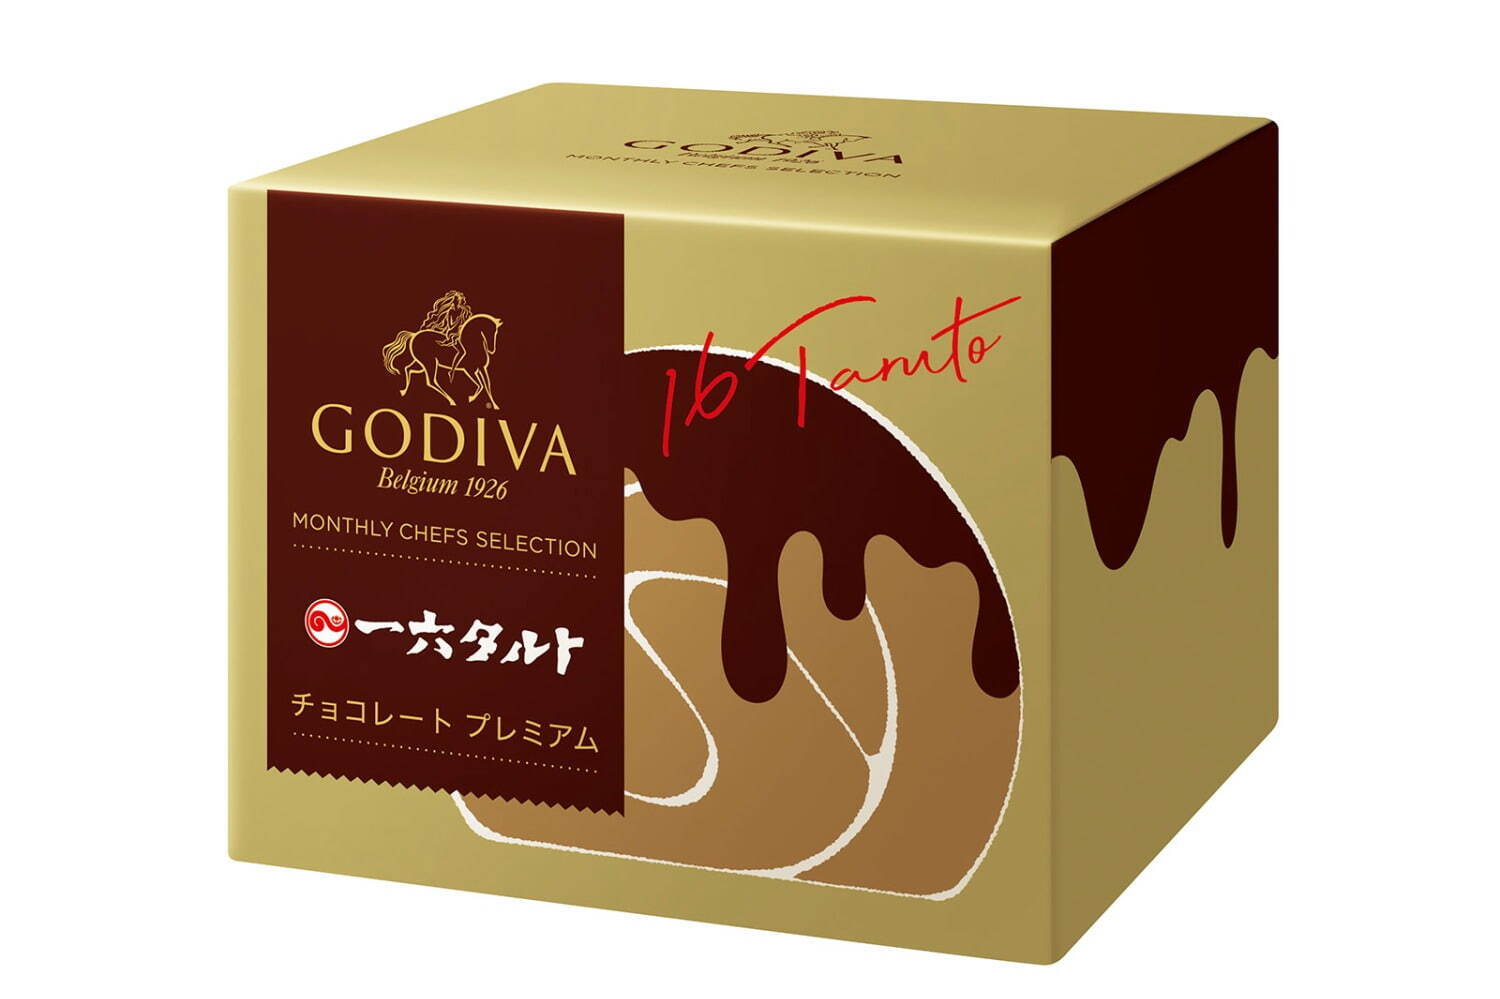 「一六タルト チョコレート プレミアム ボックス 3個入」1,458円